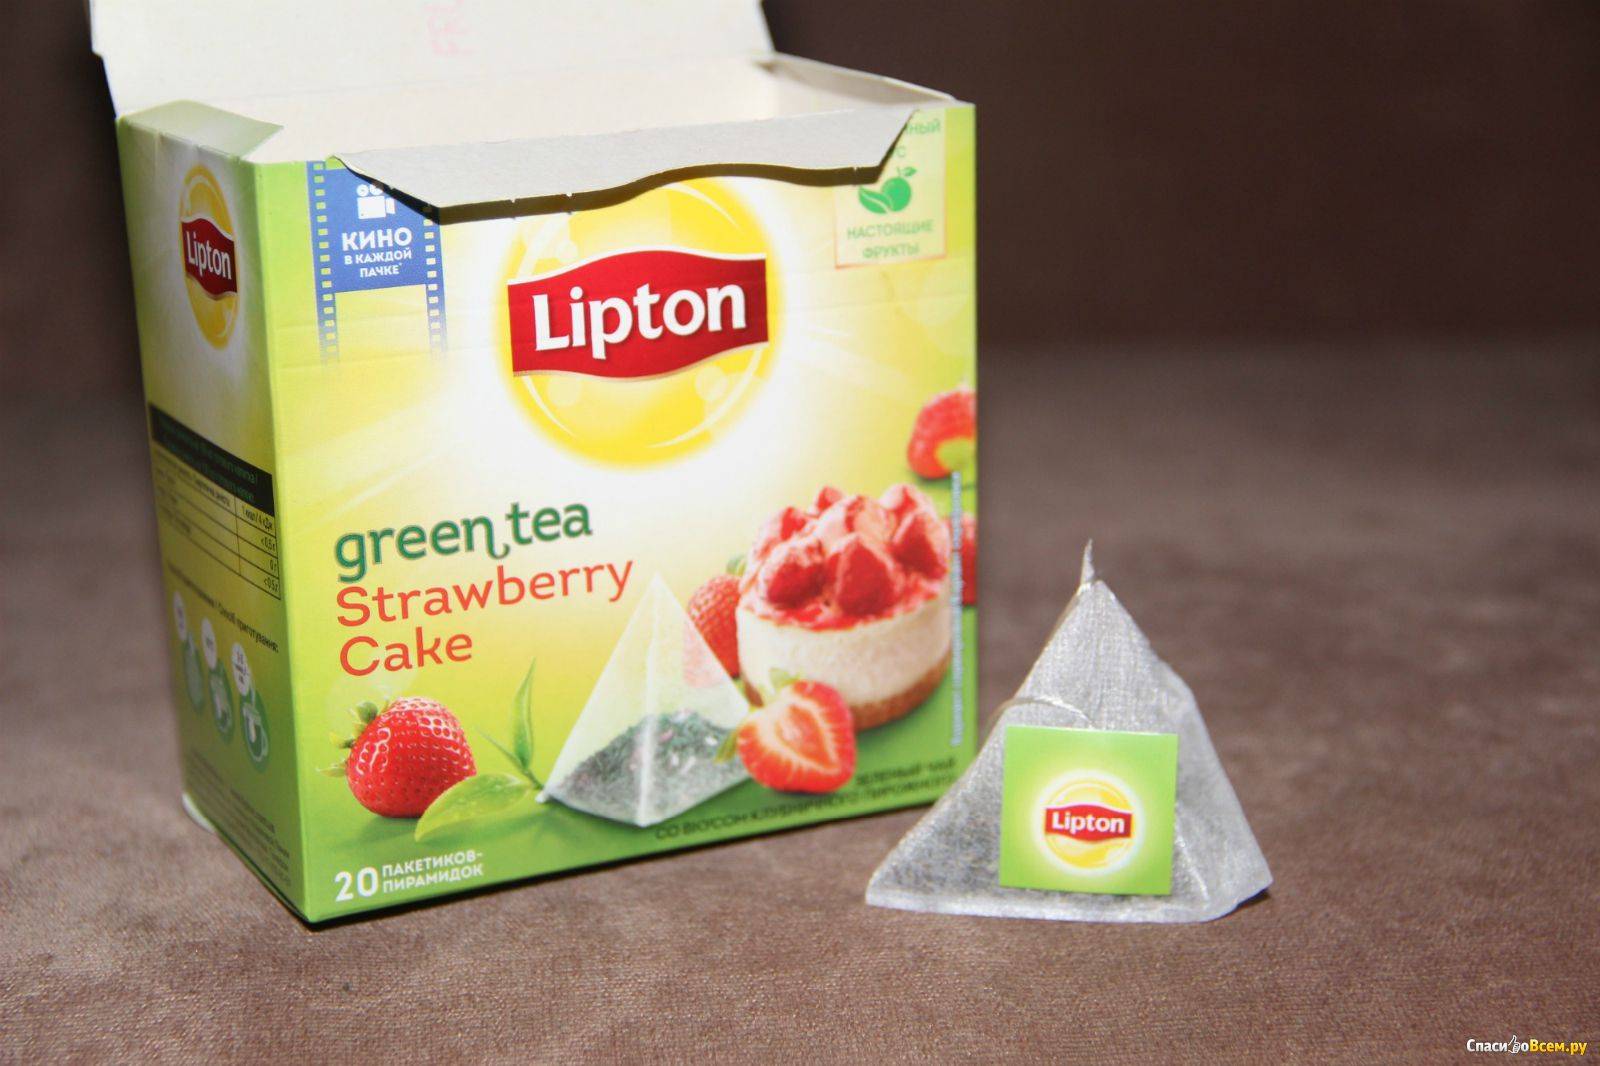 Какой чай в пакетиках самый лучший и вкусный?